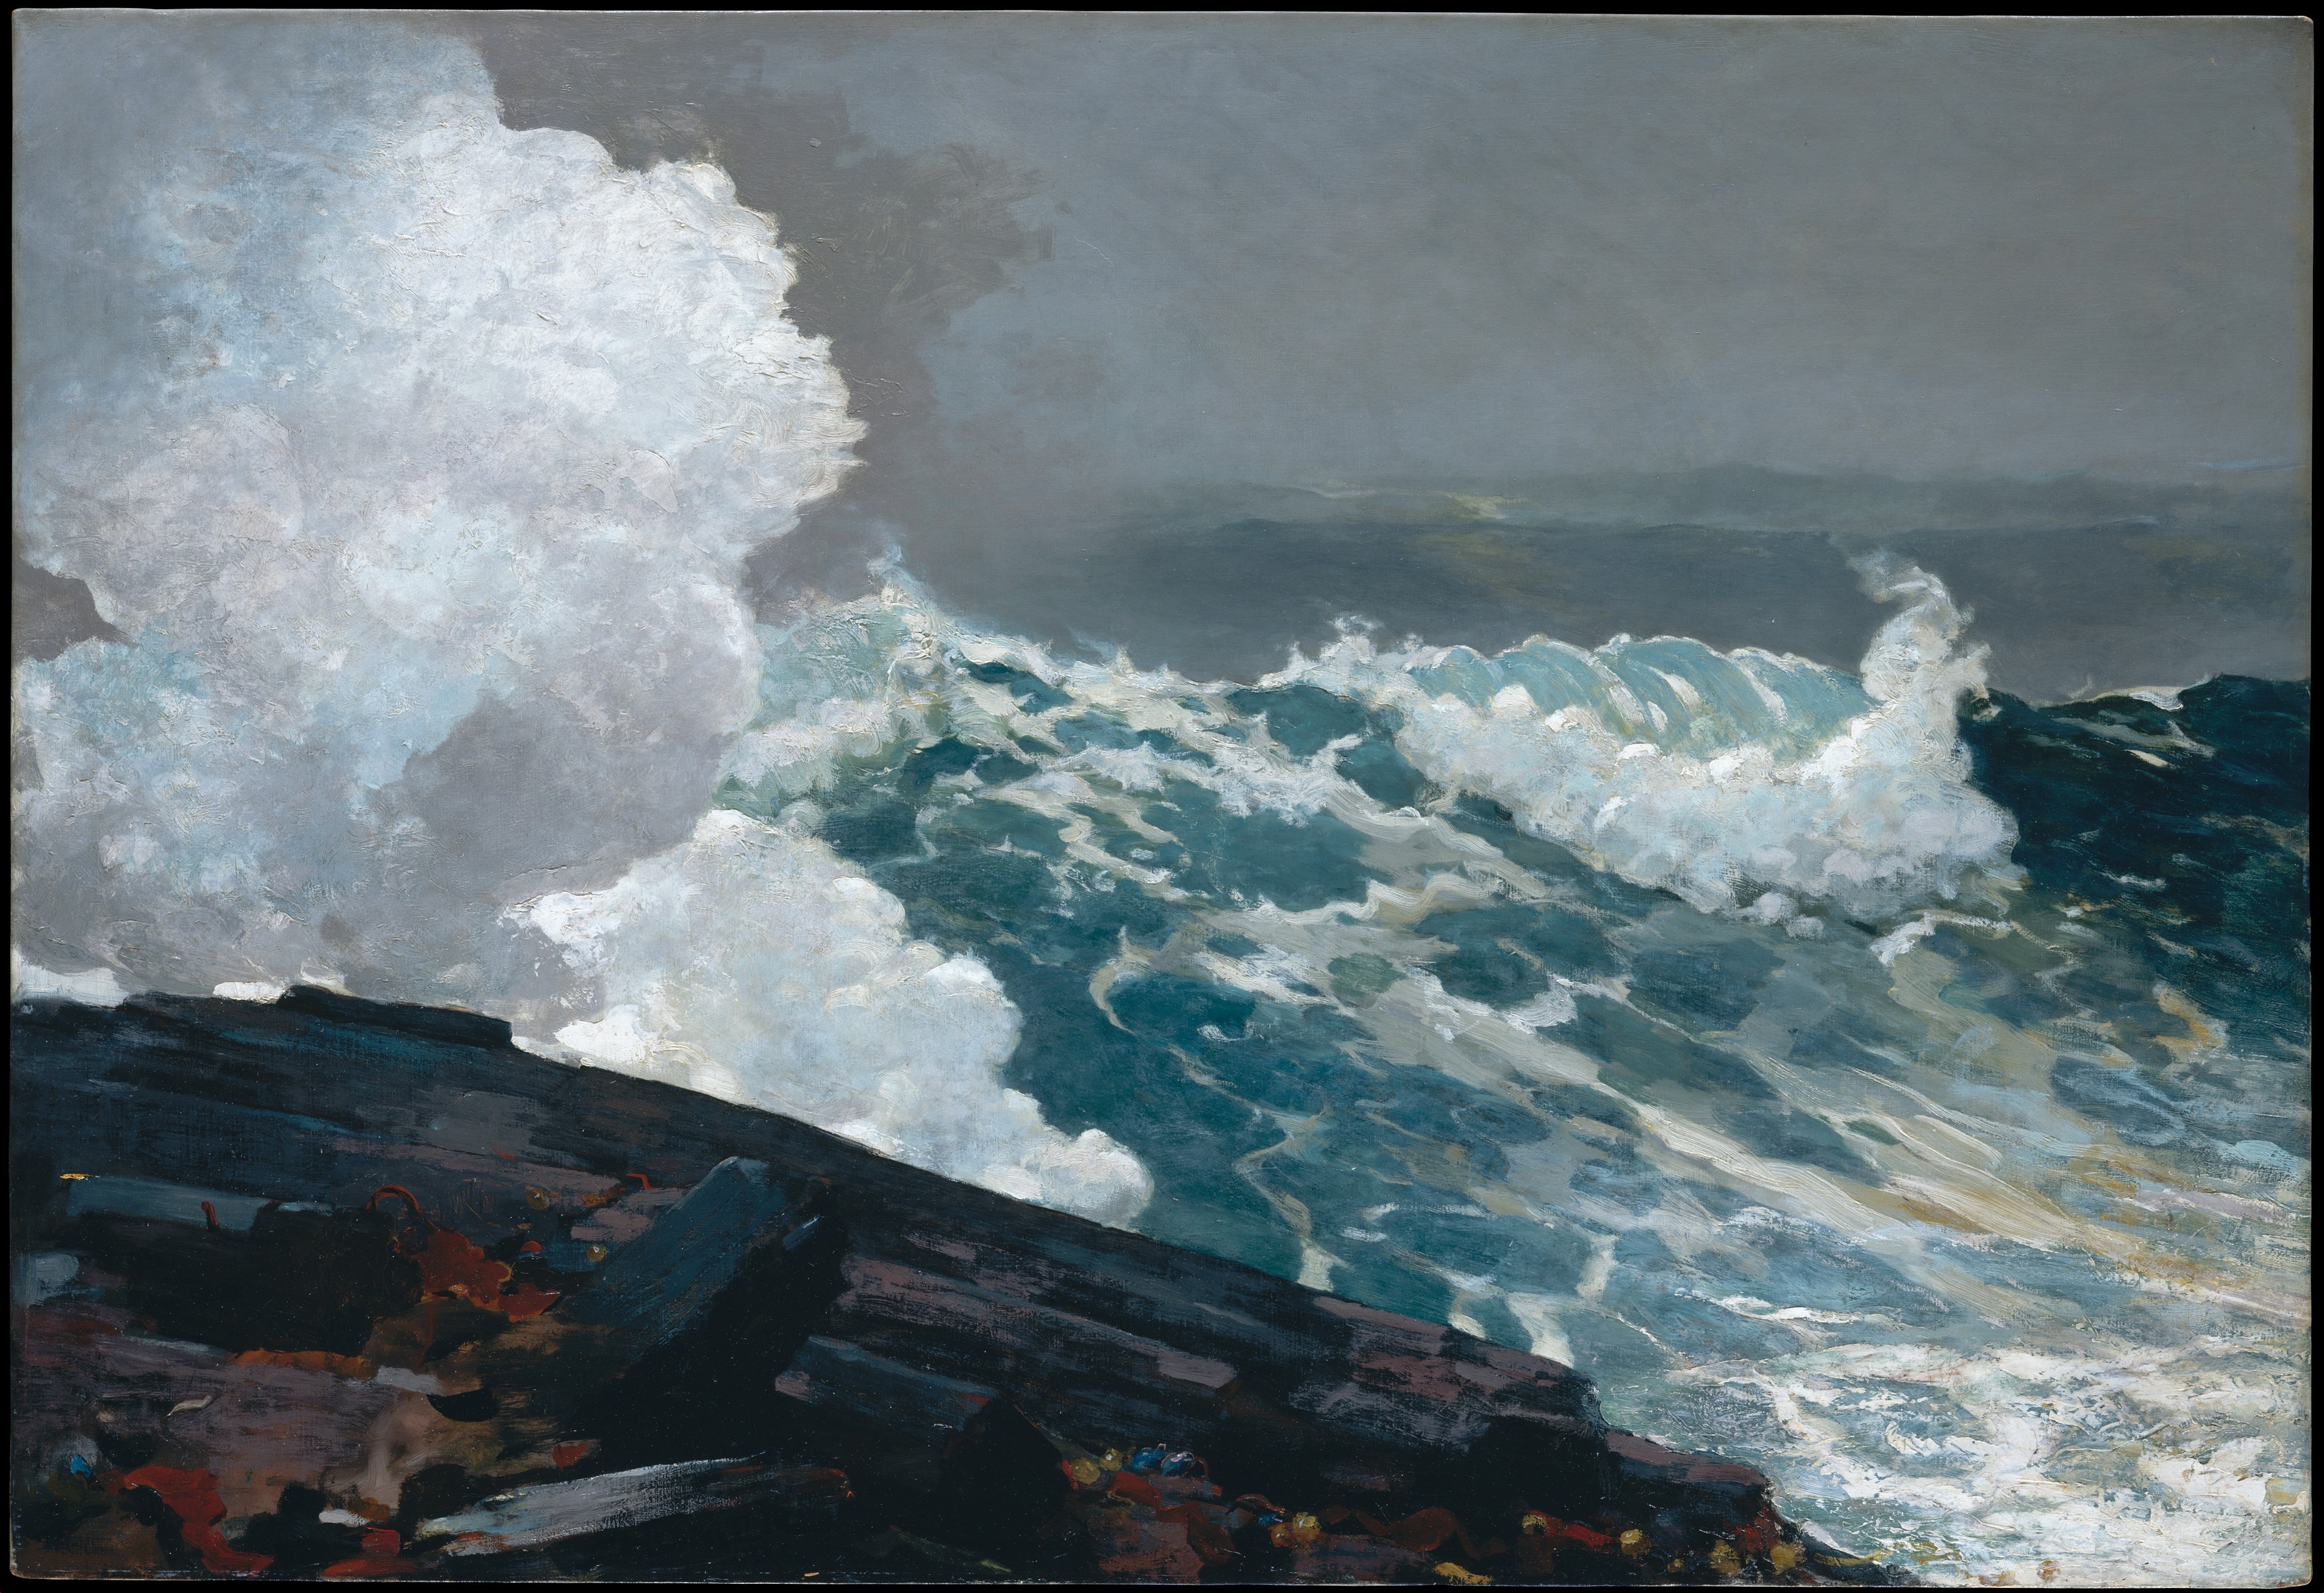 東北風 by Winslow Homer - 1895 -1901 - 87.6 x 127 cm 